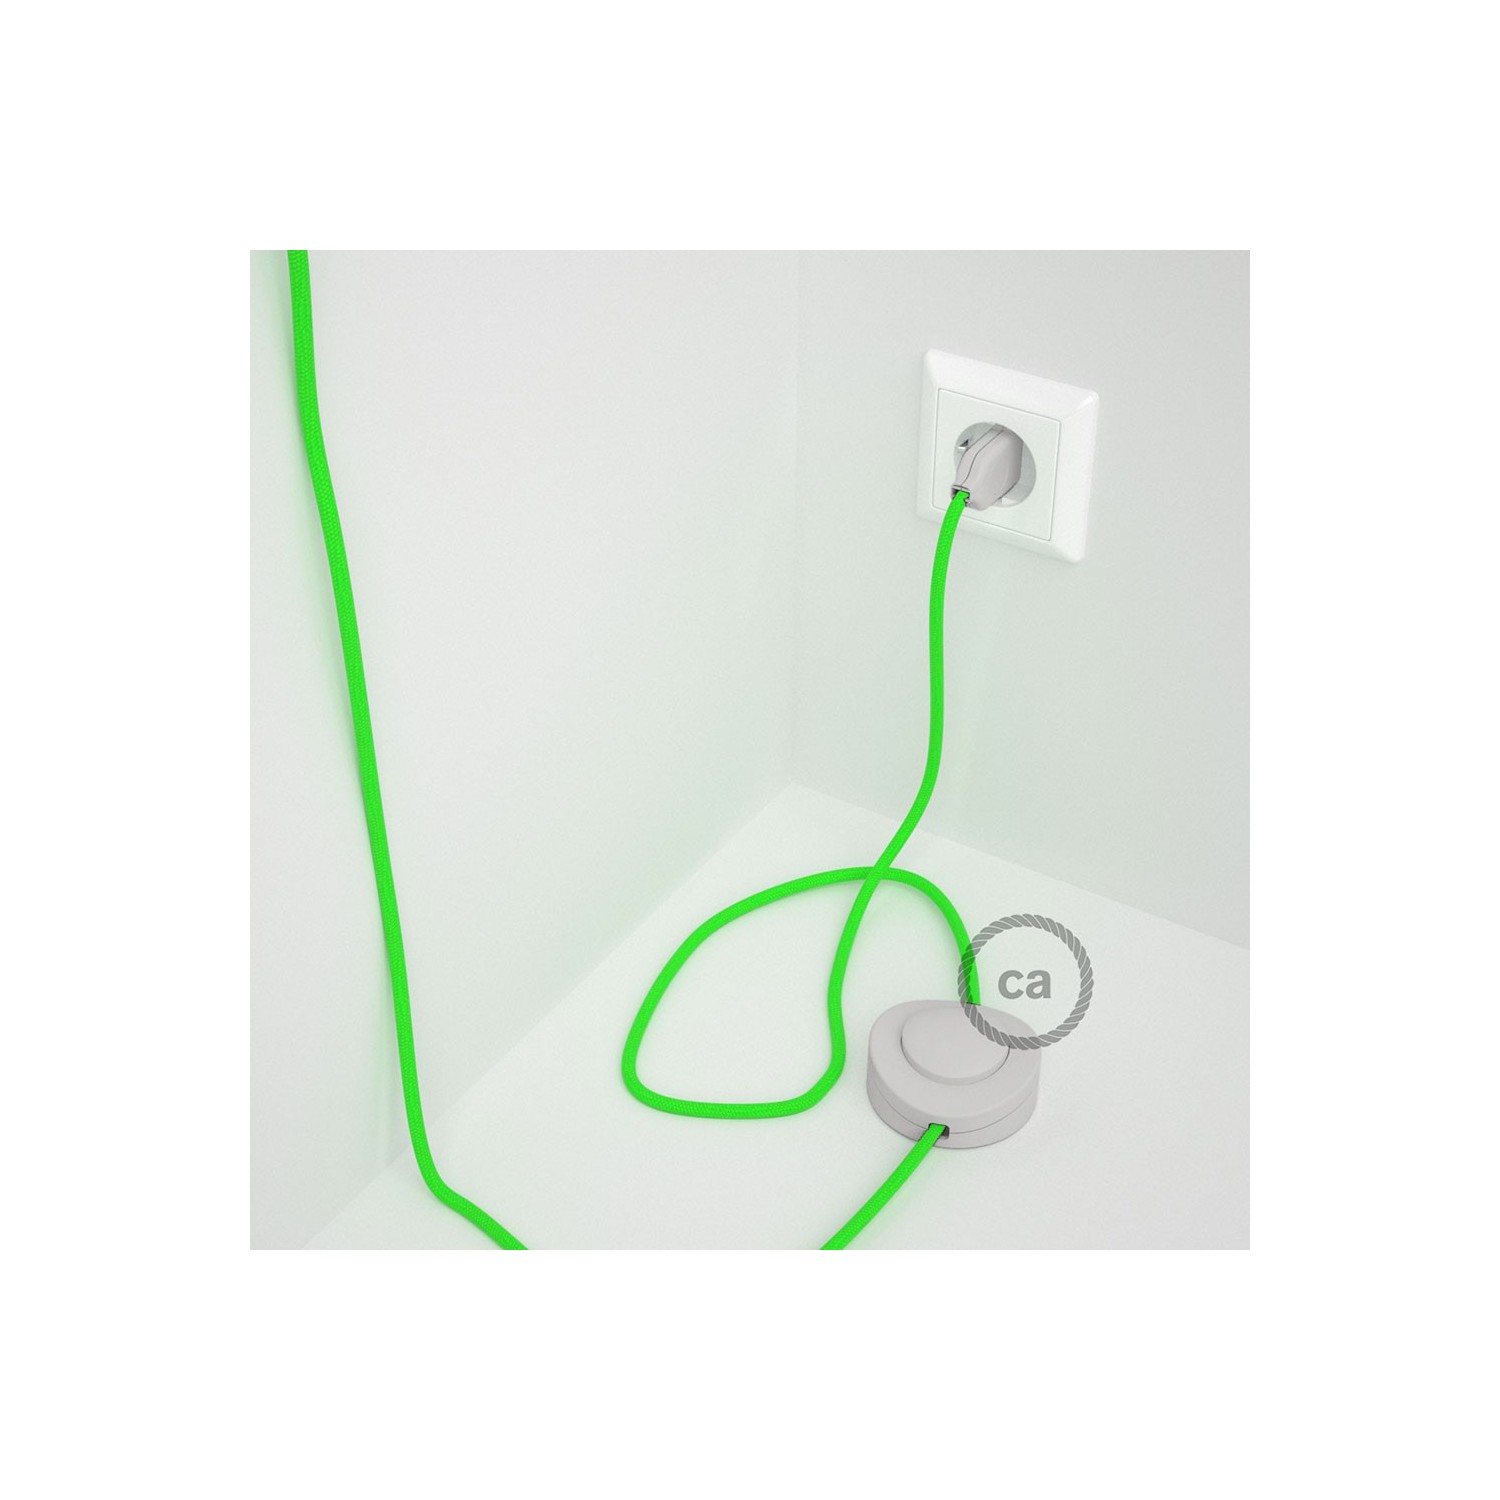 Cordon pour lampadaire, câble RF06 Effet Soie Vert Fluo 3 m. Choisissez la couleur de la fiche et de l'interrupteur!